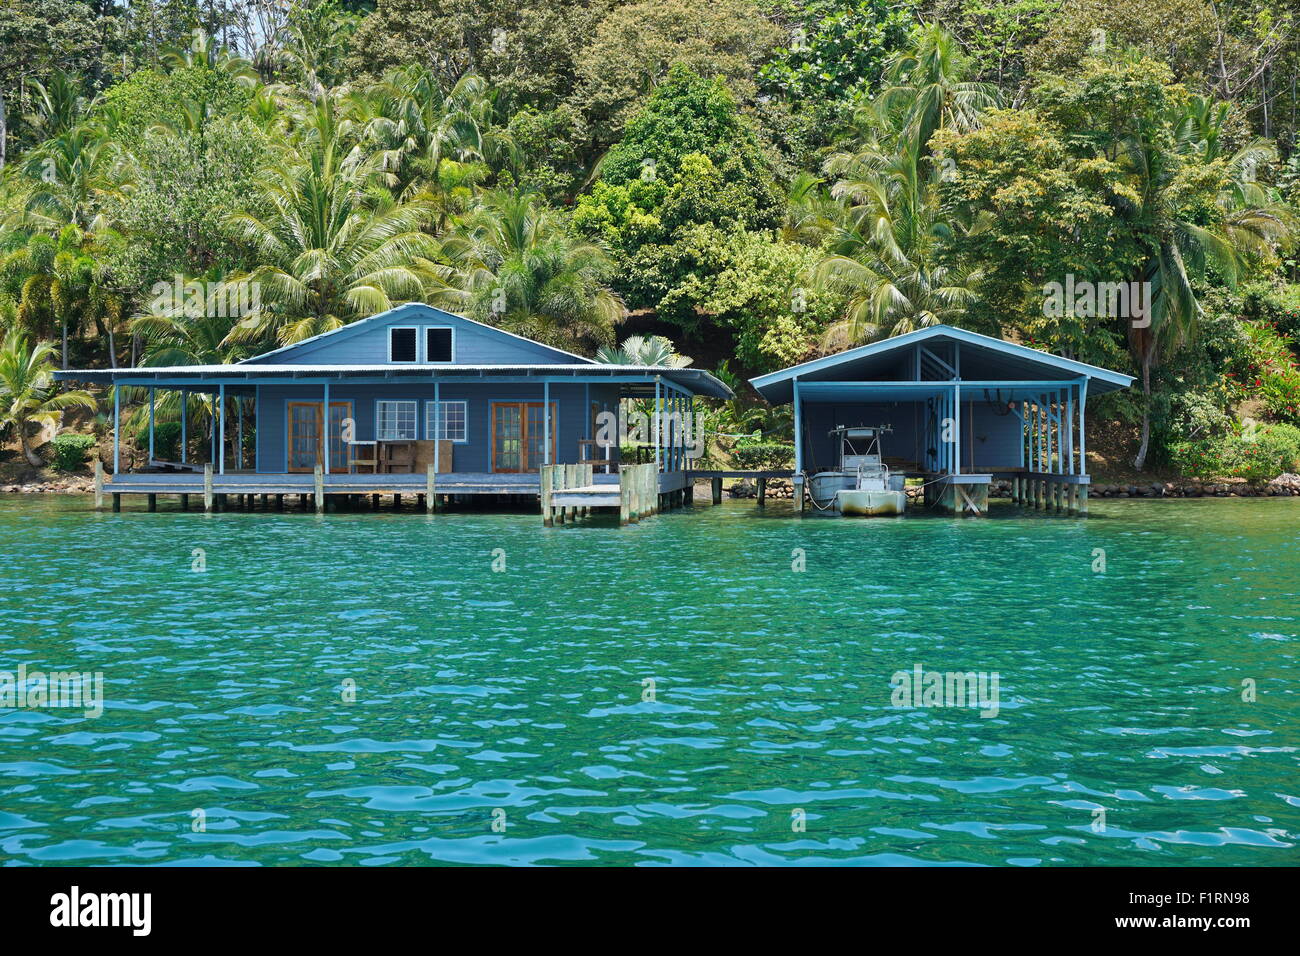 Et la maison tropical boat house sur la mer avec une végétation luxuriante sur la rive, Panama, Amérique Centrale Banque D'Images